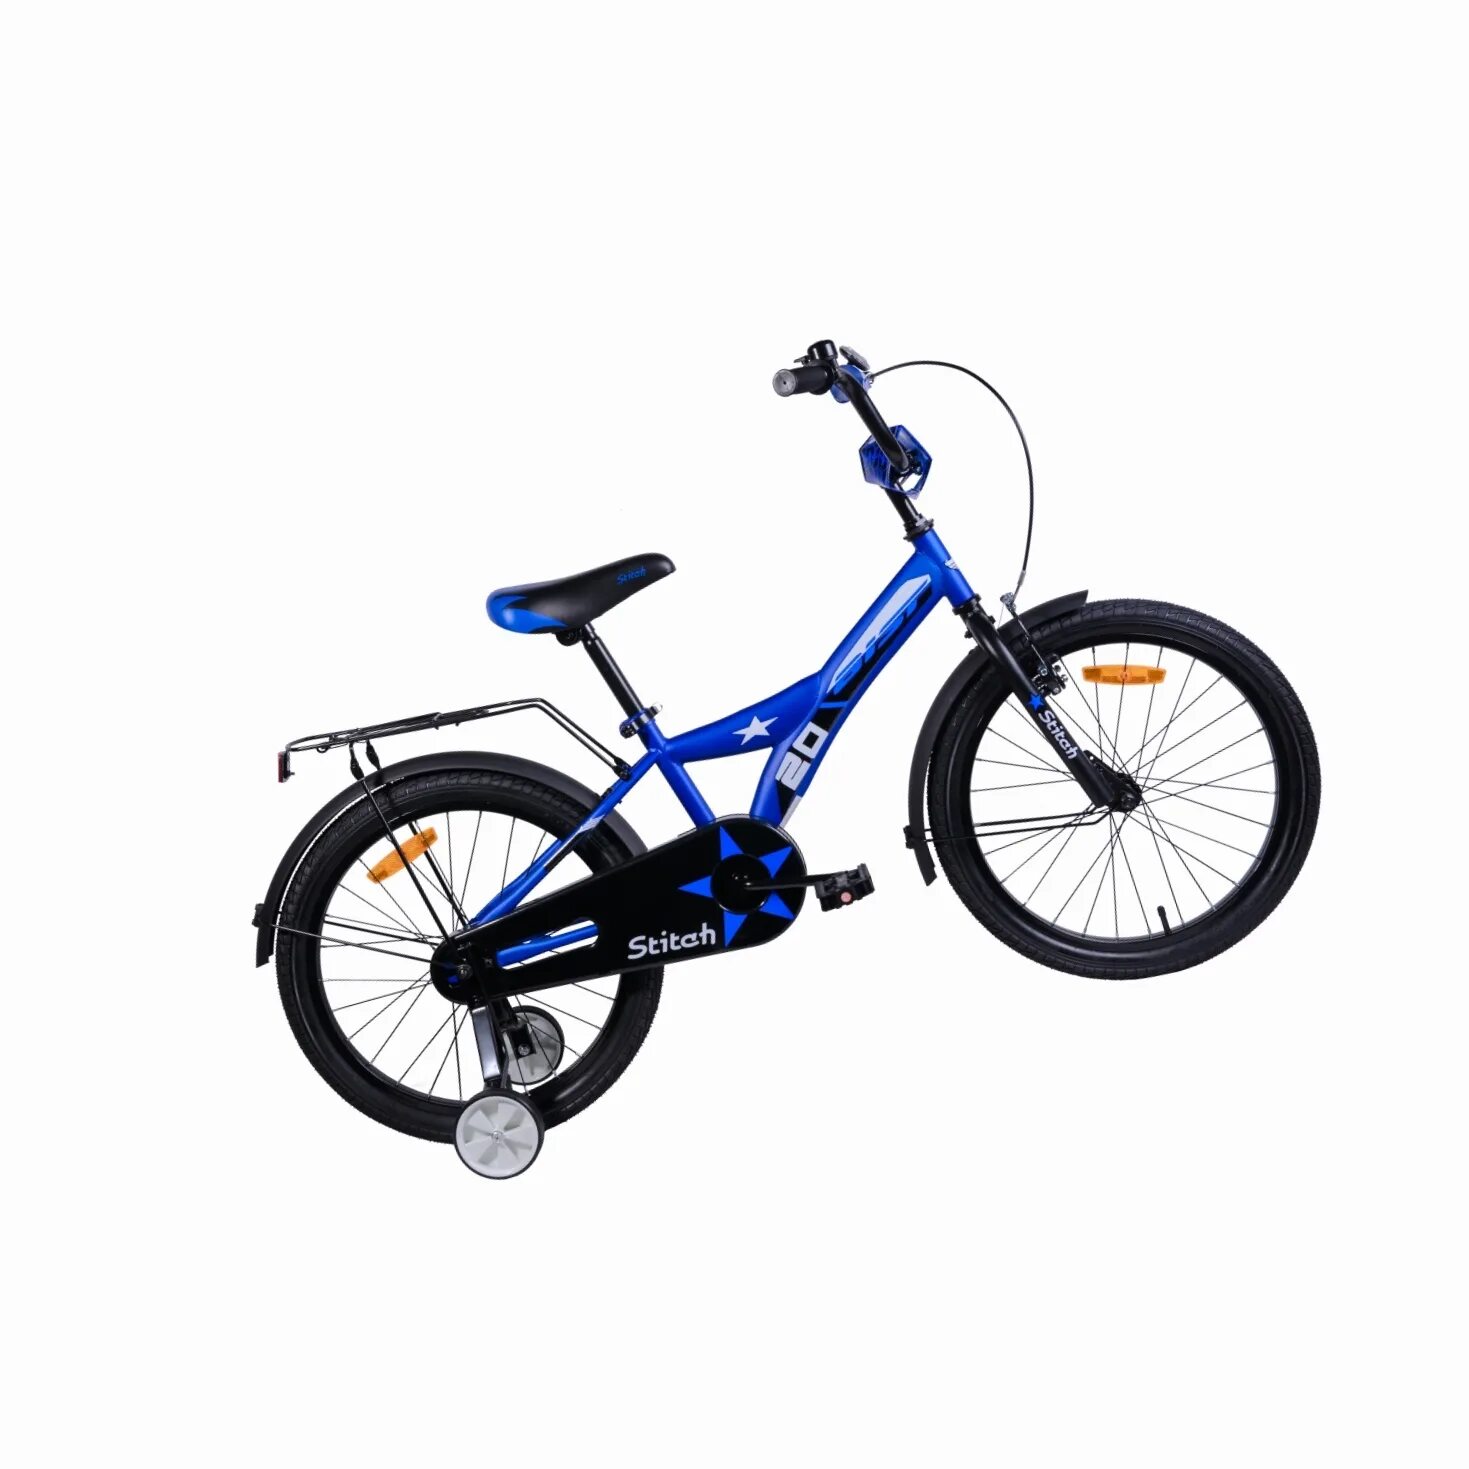 Аист котлас. Велосипед подростковый strong Stitch 20. Велосипед Aist Skye 20 фиолетовый. Велосипед Аист 20 дюймов. Велосипед Stitch 20 jk19500 14 20c.